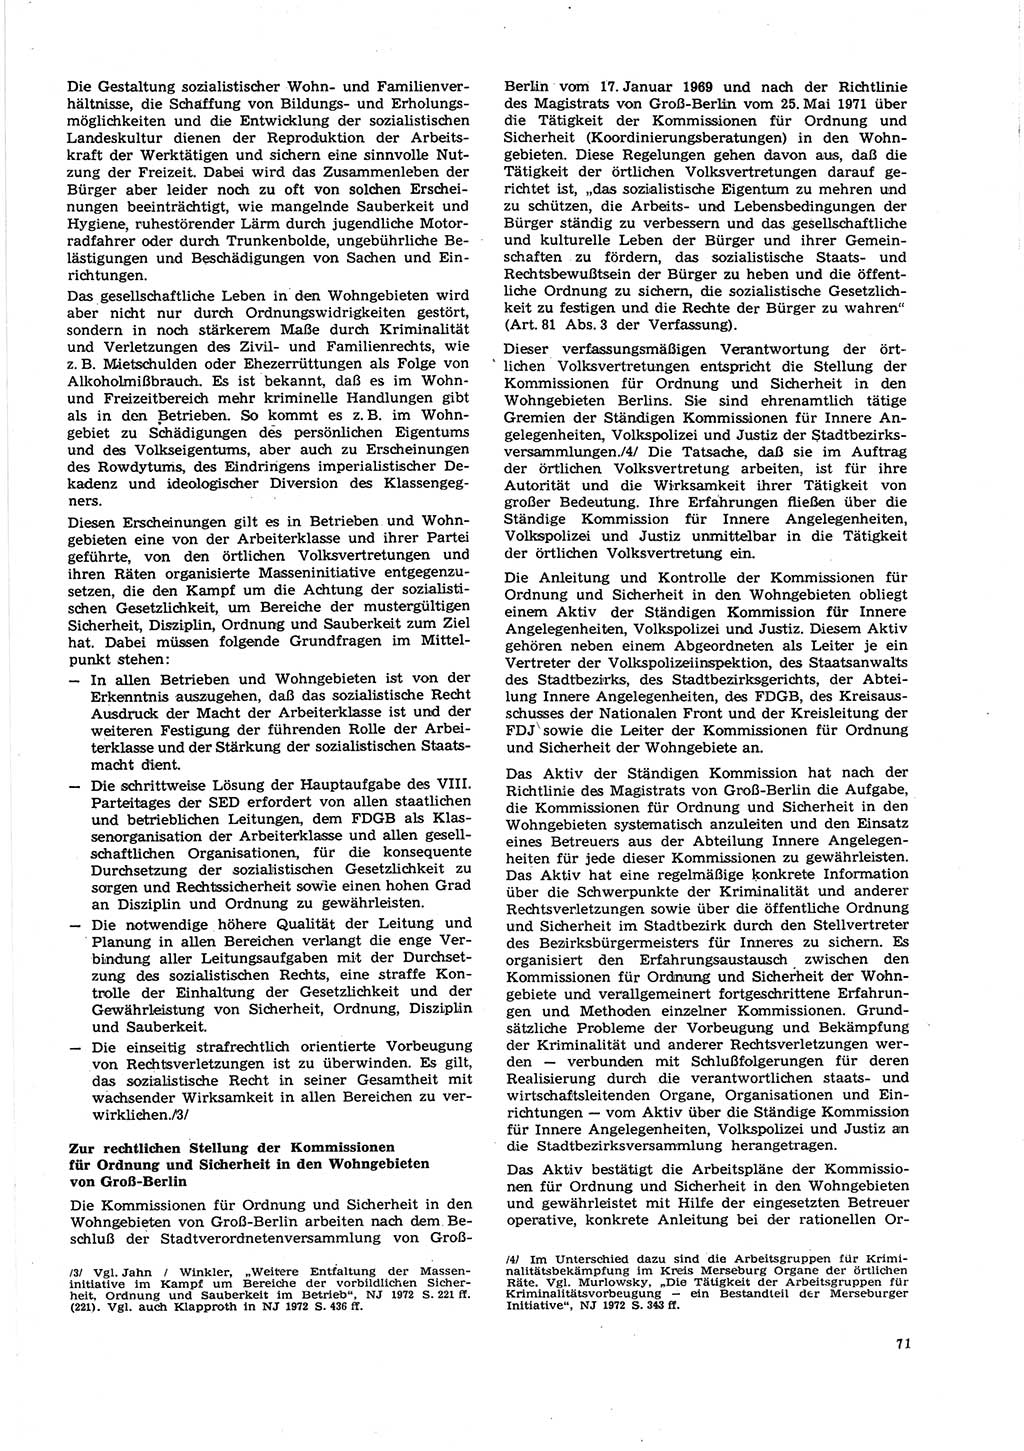 Neue Justiz (NJ), Zeitschrift für Recht und Rechtswissenschaft [Deutsche Demokratische Republik (DDR)], 27. Jahrgang 1973, Seite 71 (NJ DDR 1973, S. 71)